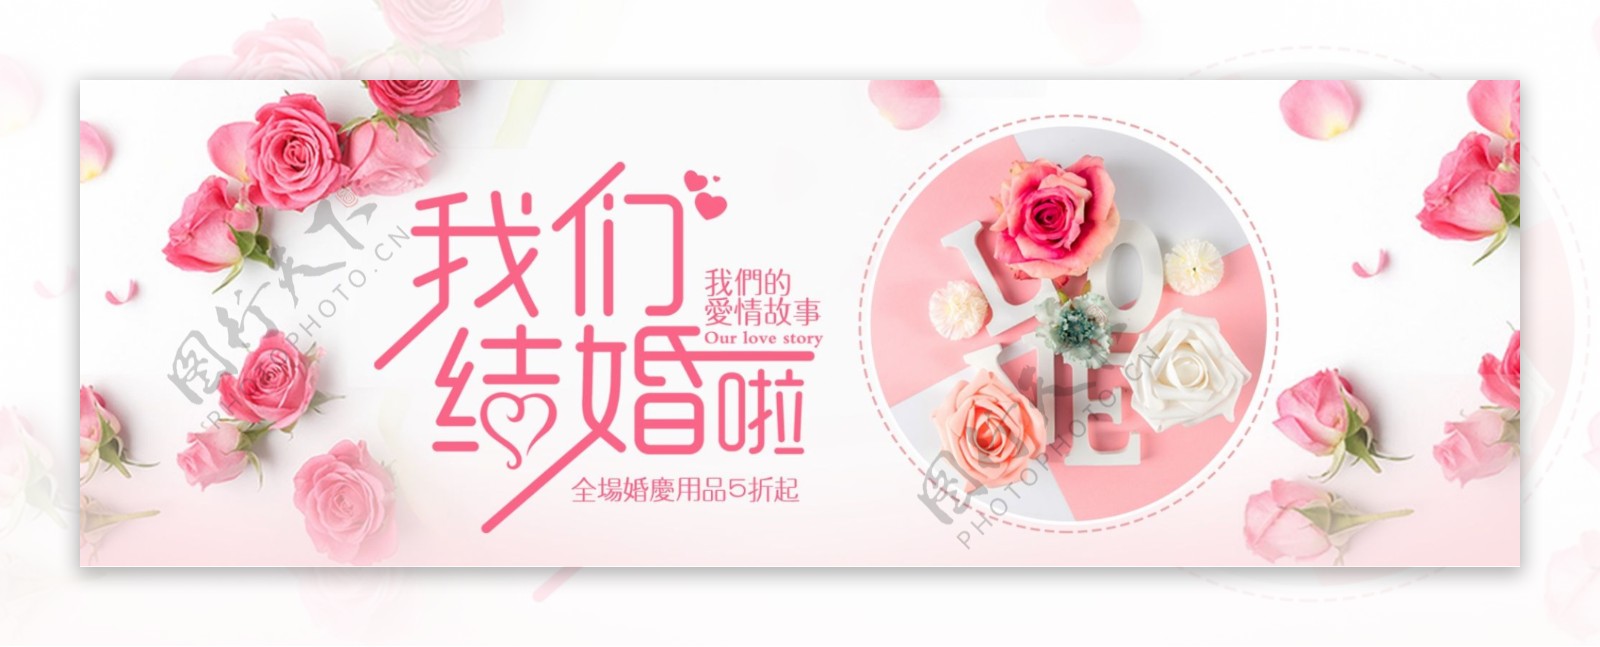 粉红色浪漫玫瑰秋季婚博会电商banner淘宝海报